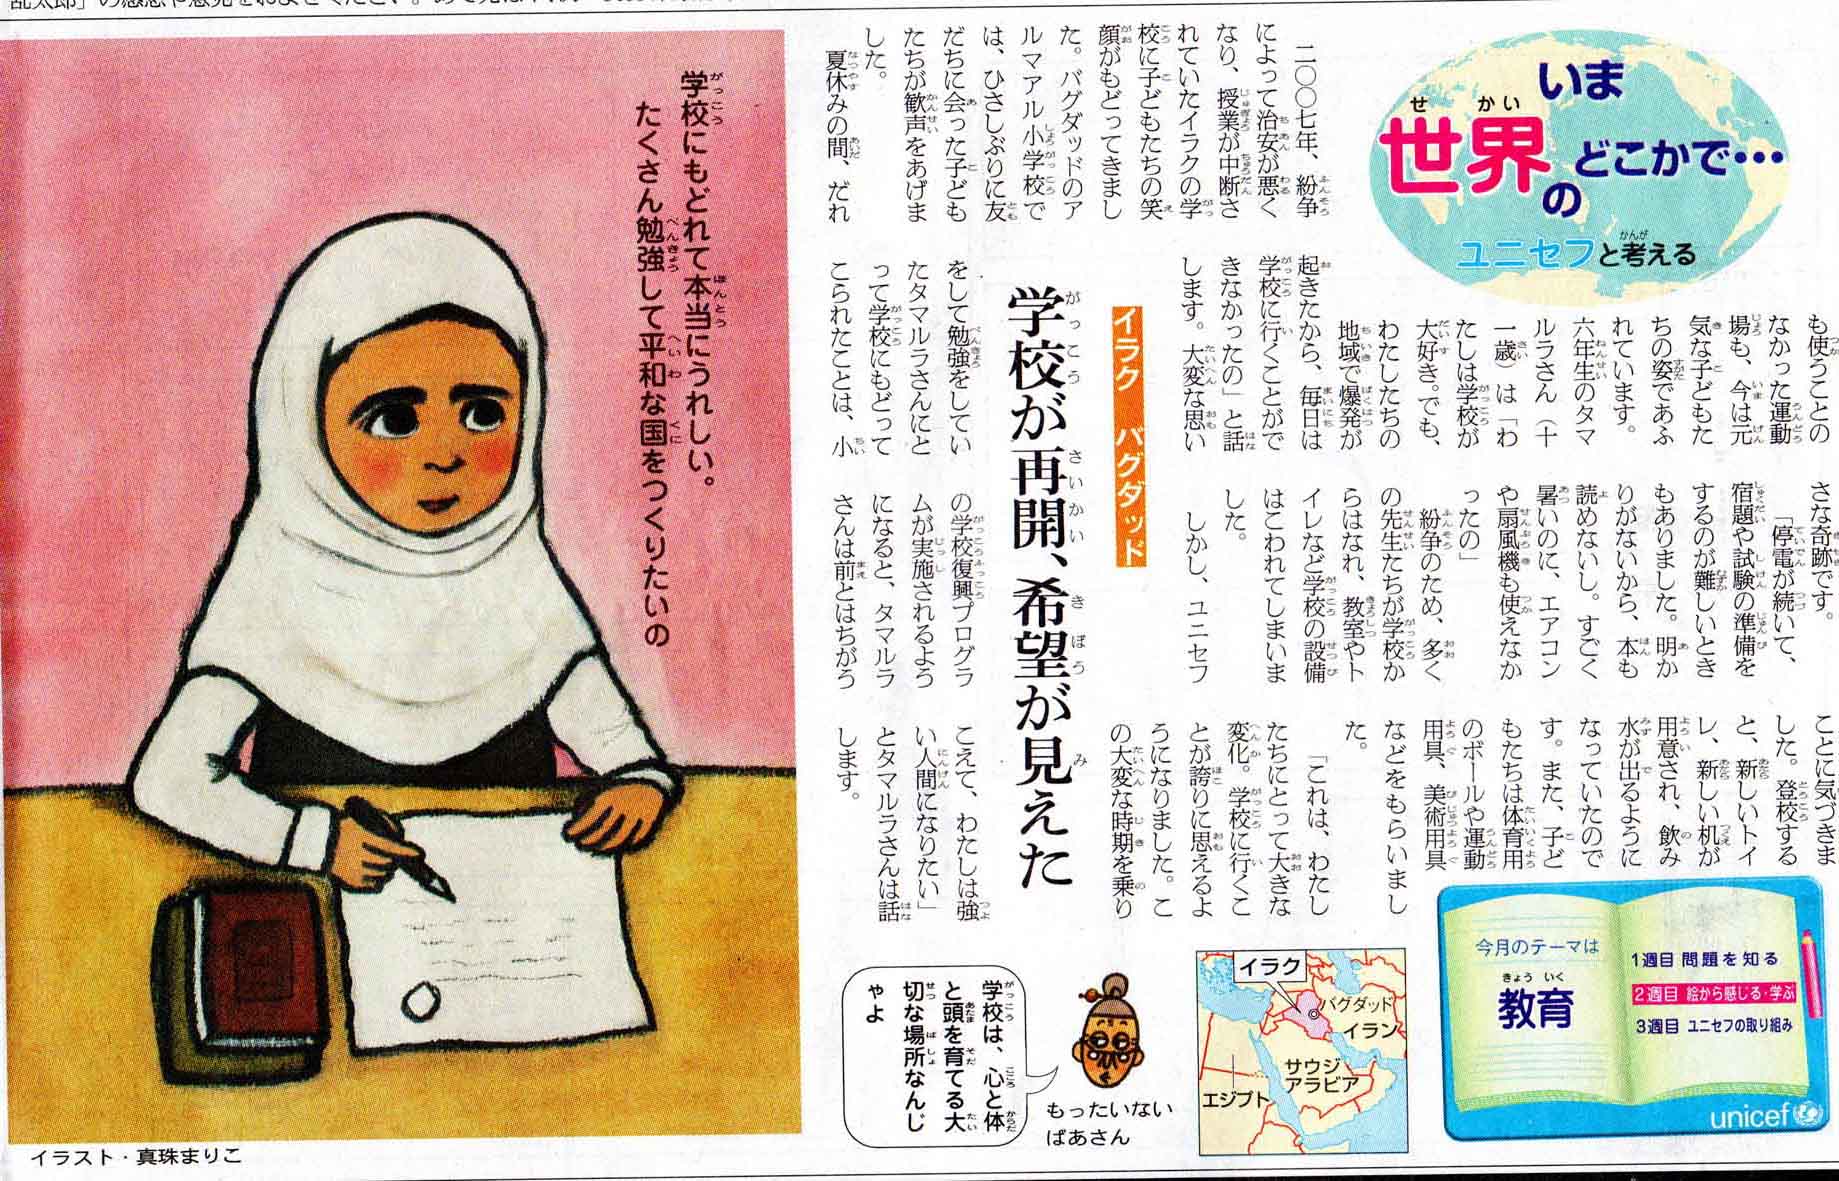 朝日小学生新聞「いま世界のどこかで・・・ユニセフと考える」を連載-01